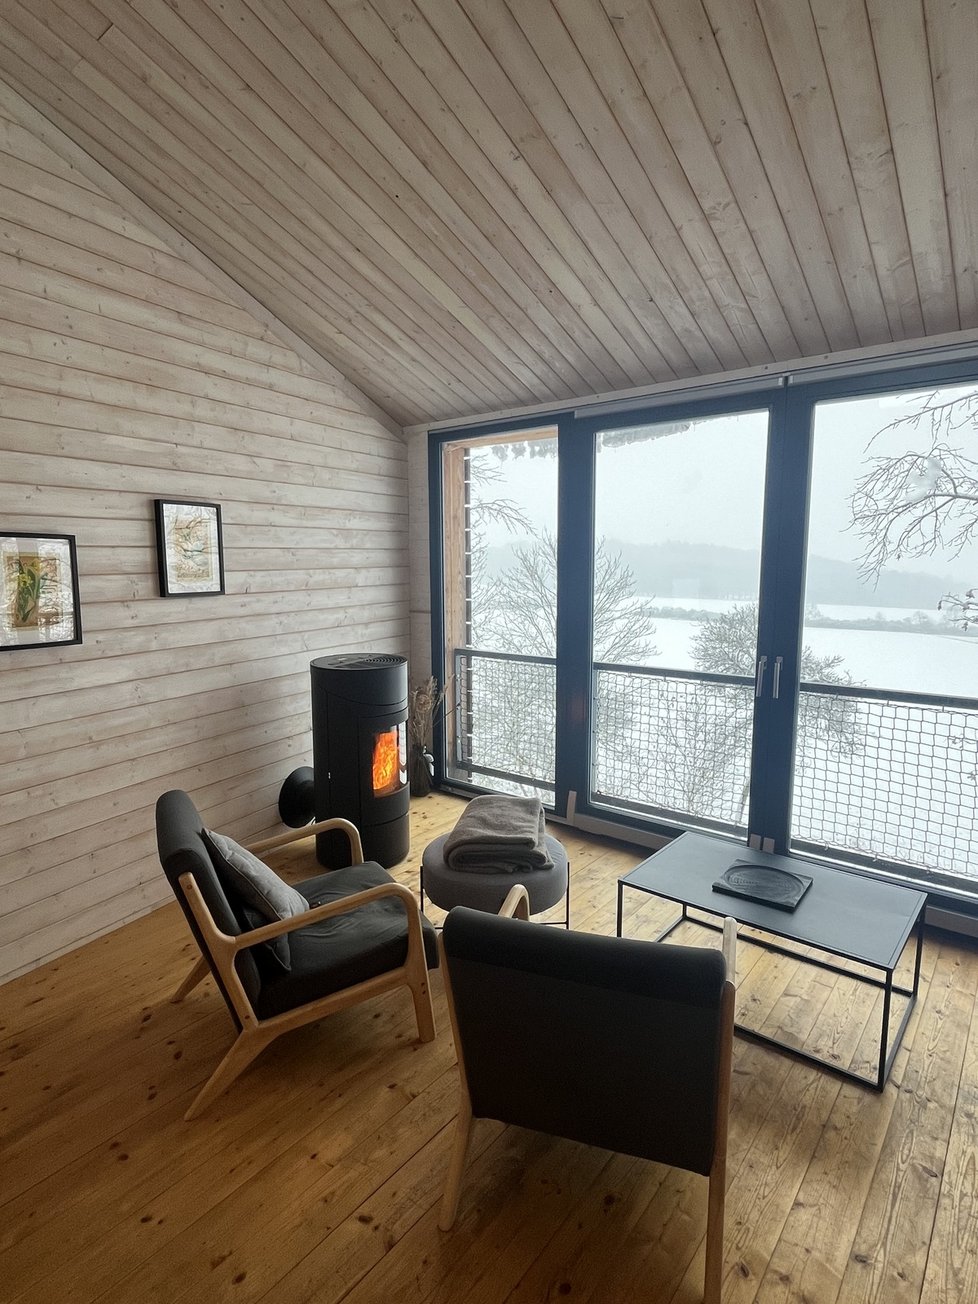 Dokonale propojený design s přírodou: Na skále, s úžasným výhledem i saunou a vířivkou!